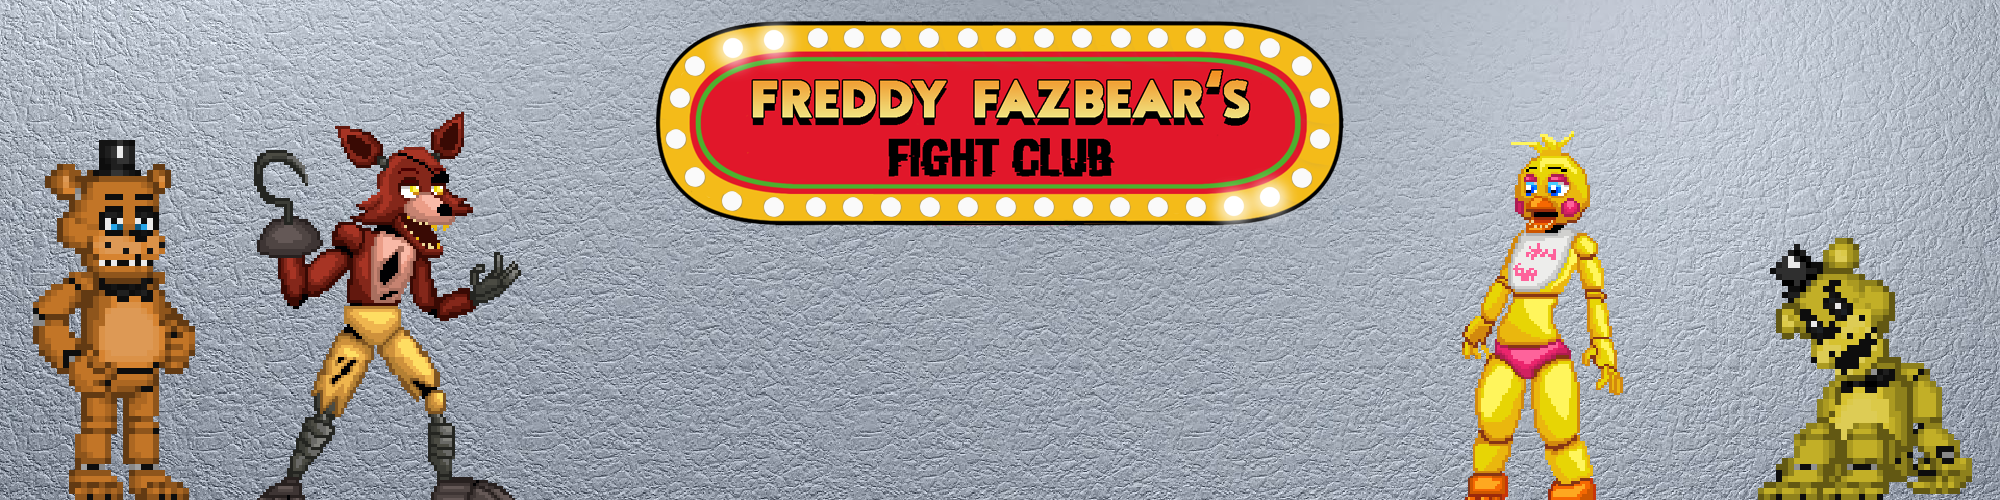 Freddy Fazbear's Fight Club